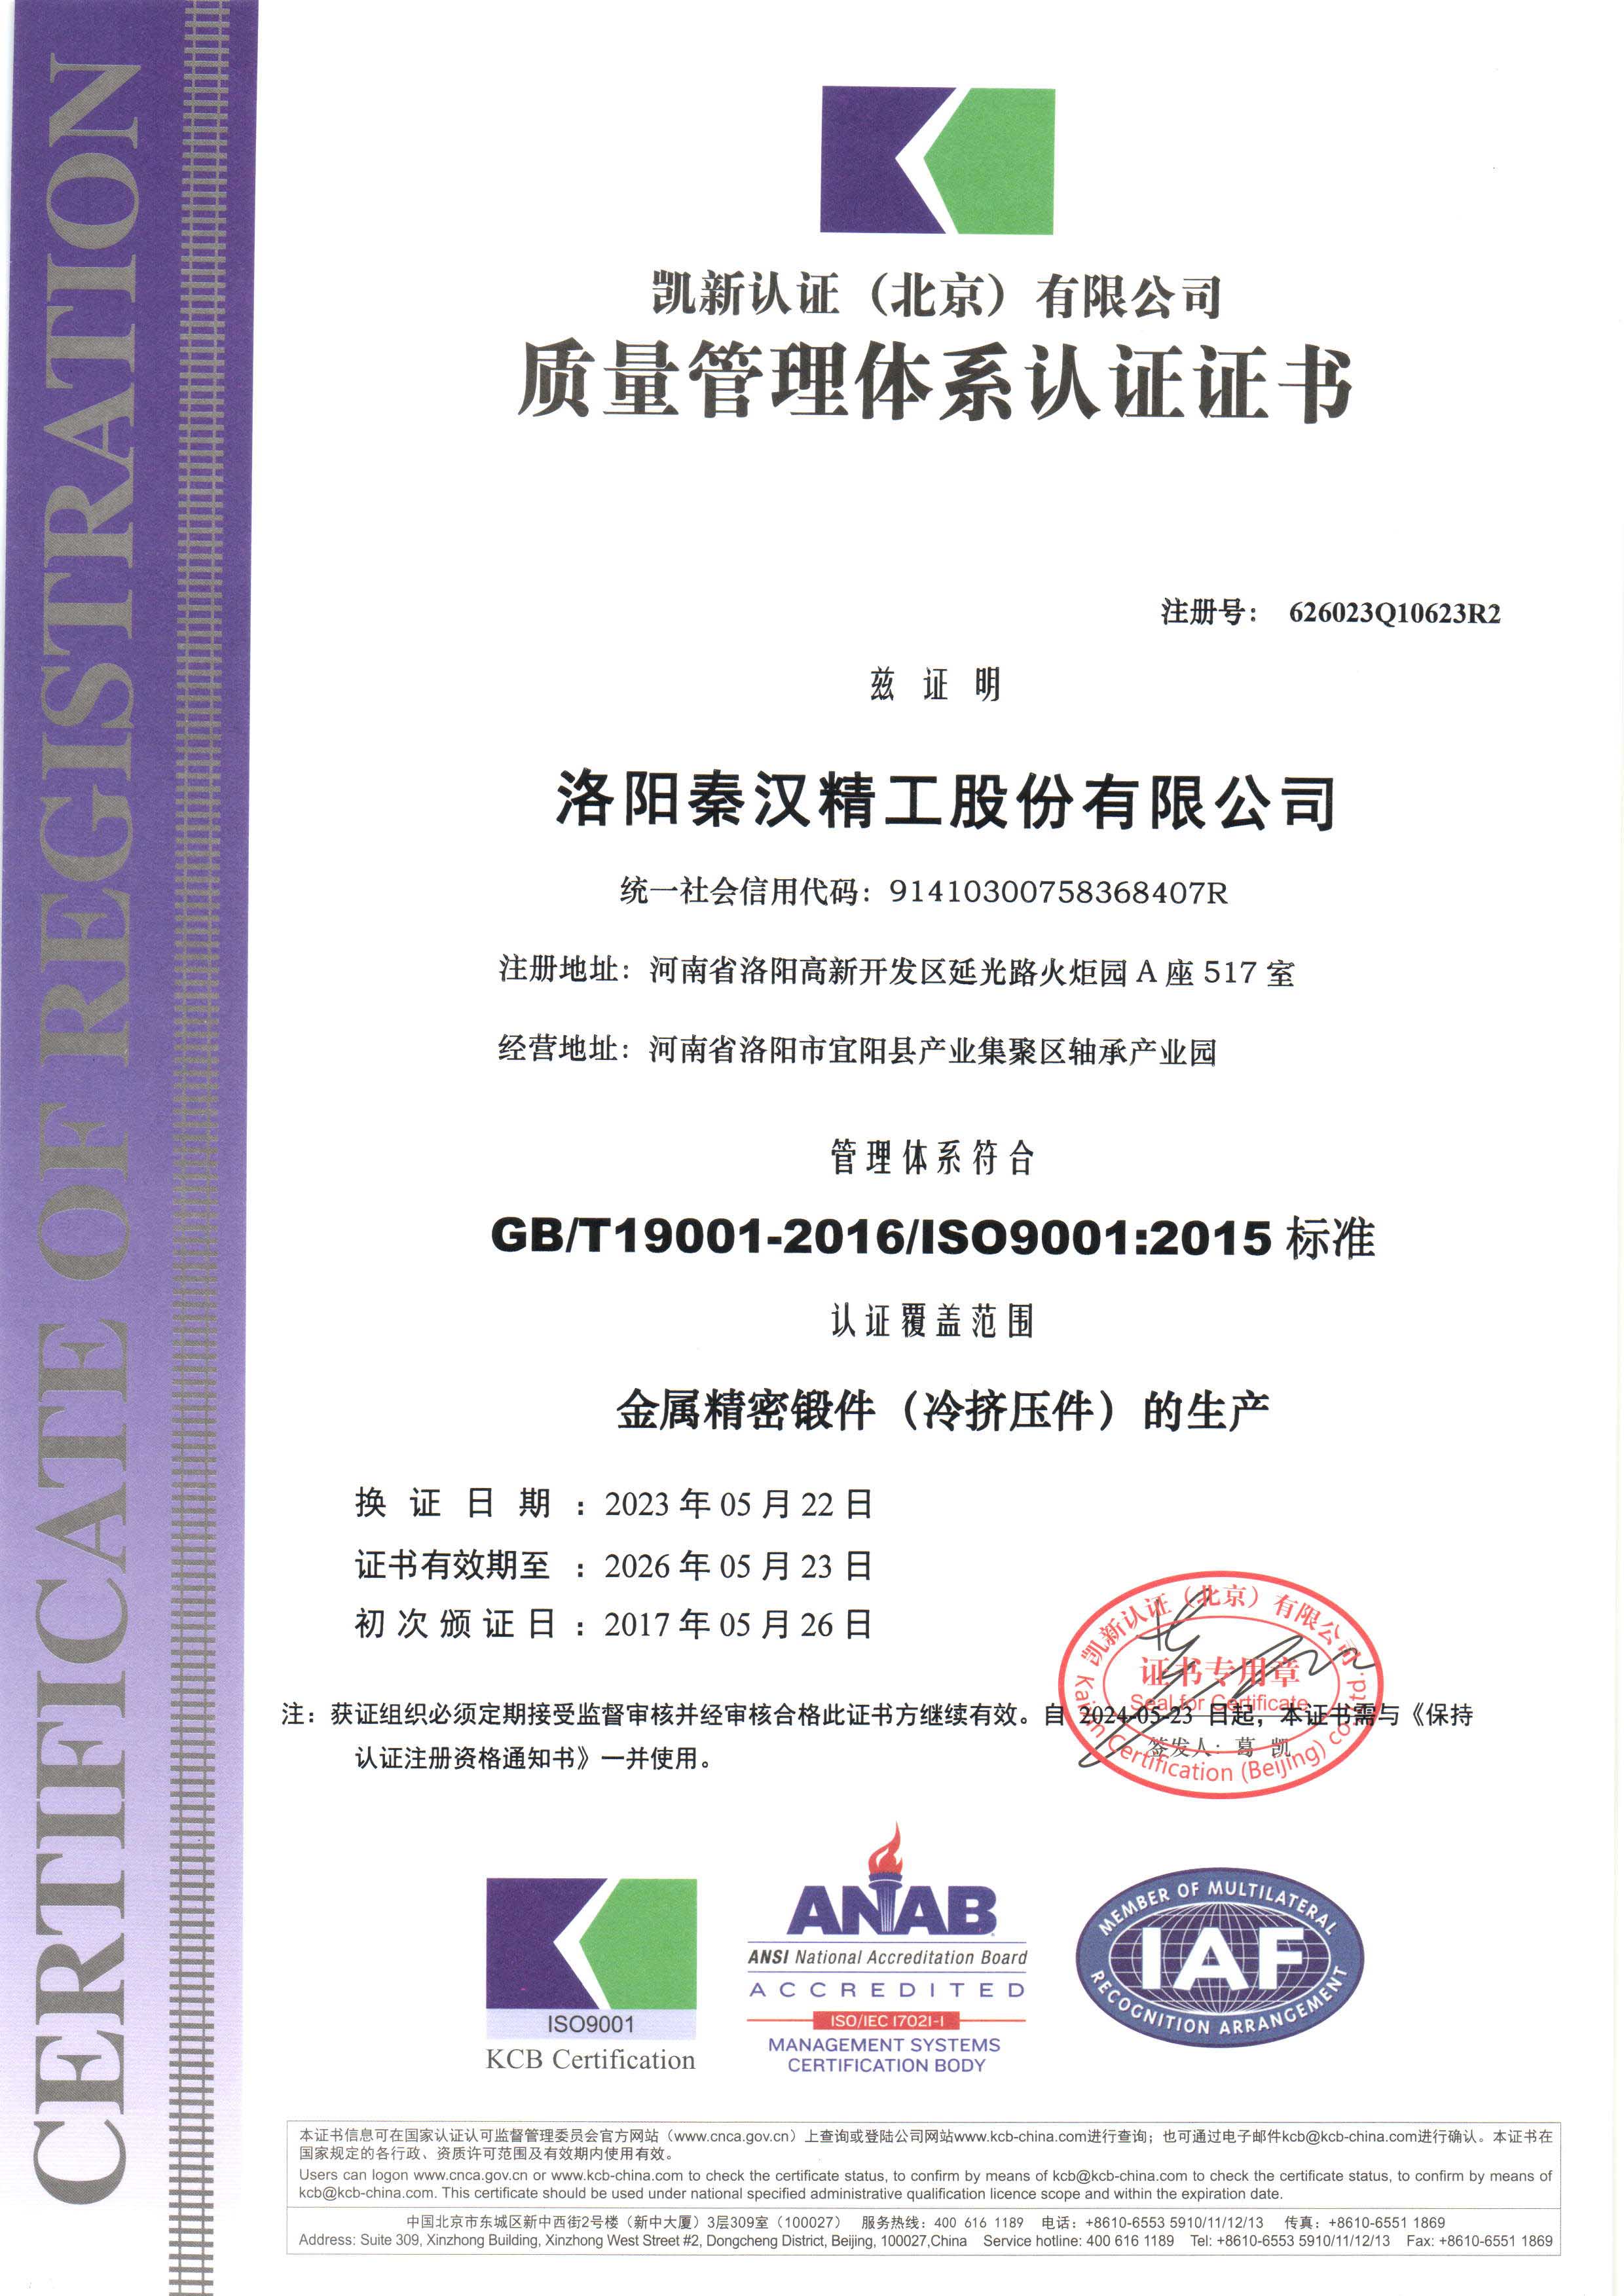 ISO90012015質量管理體系認證證書 